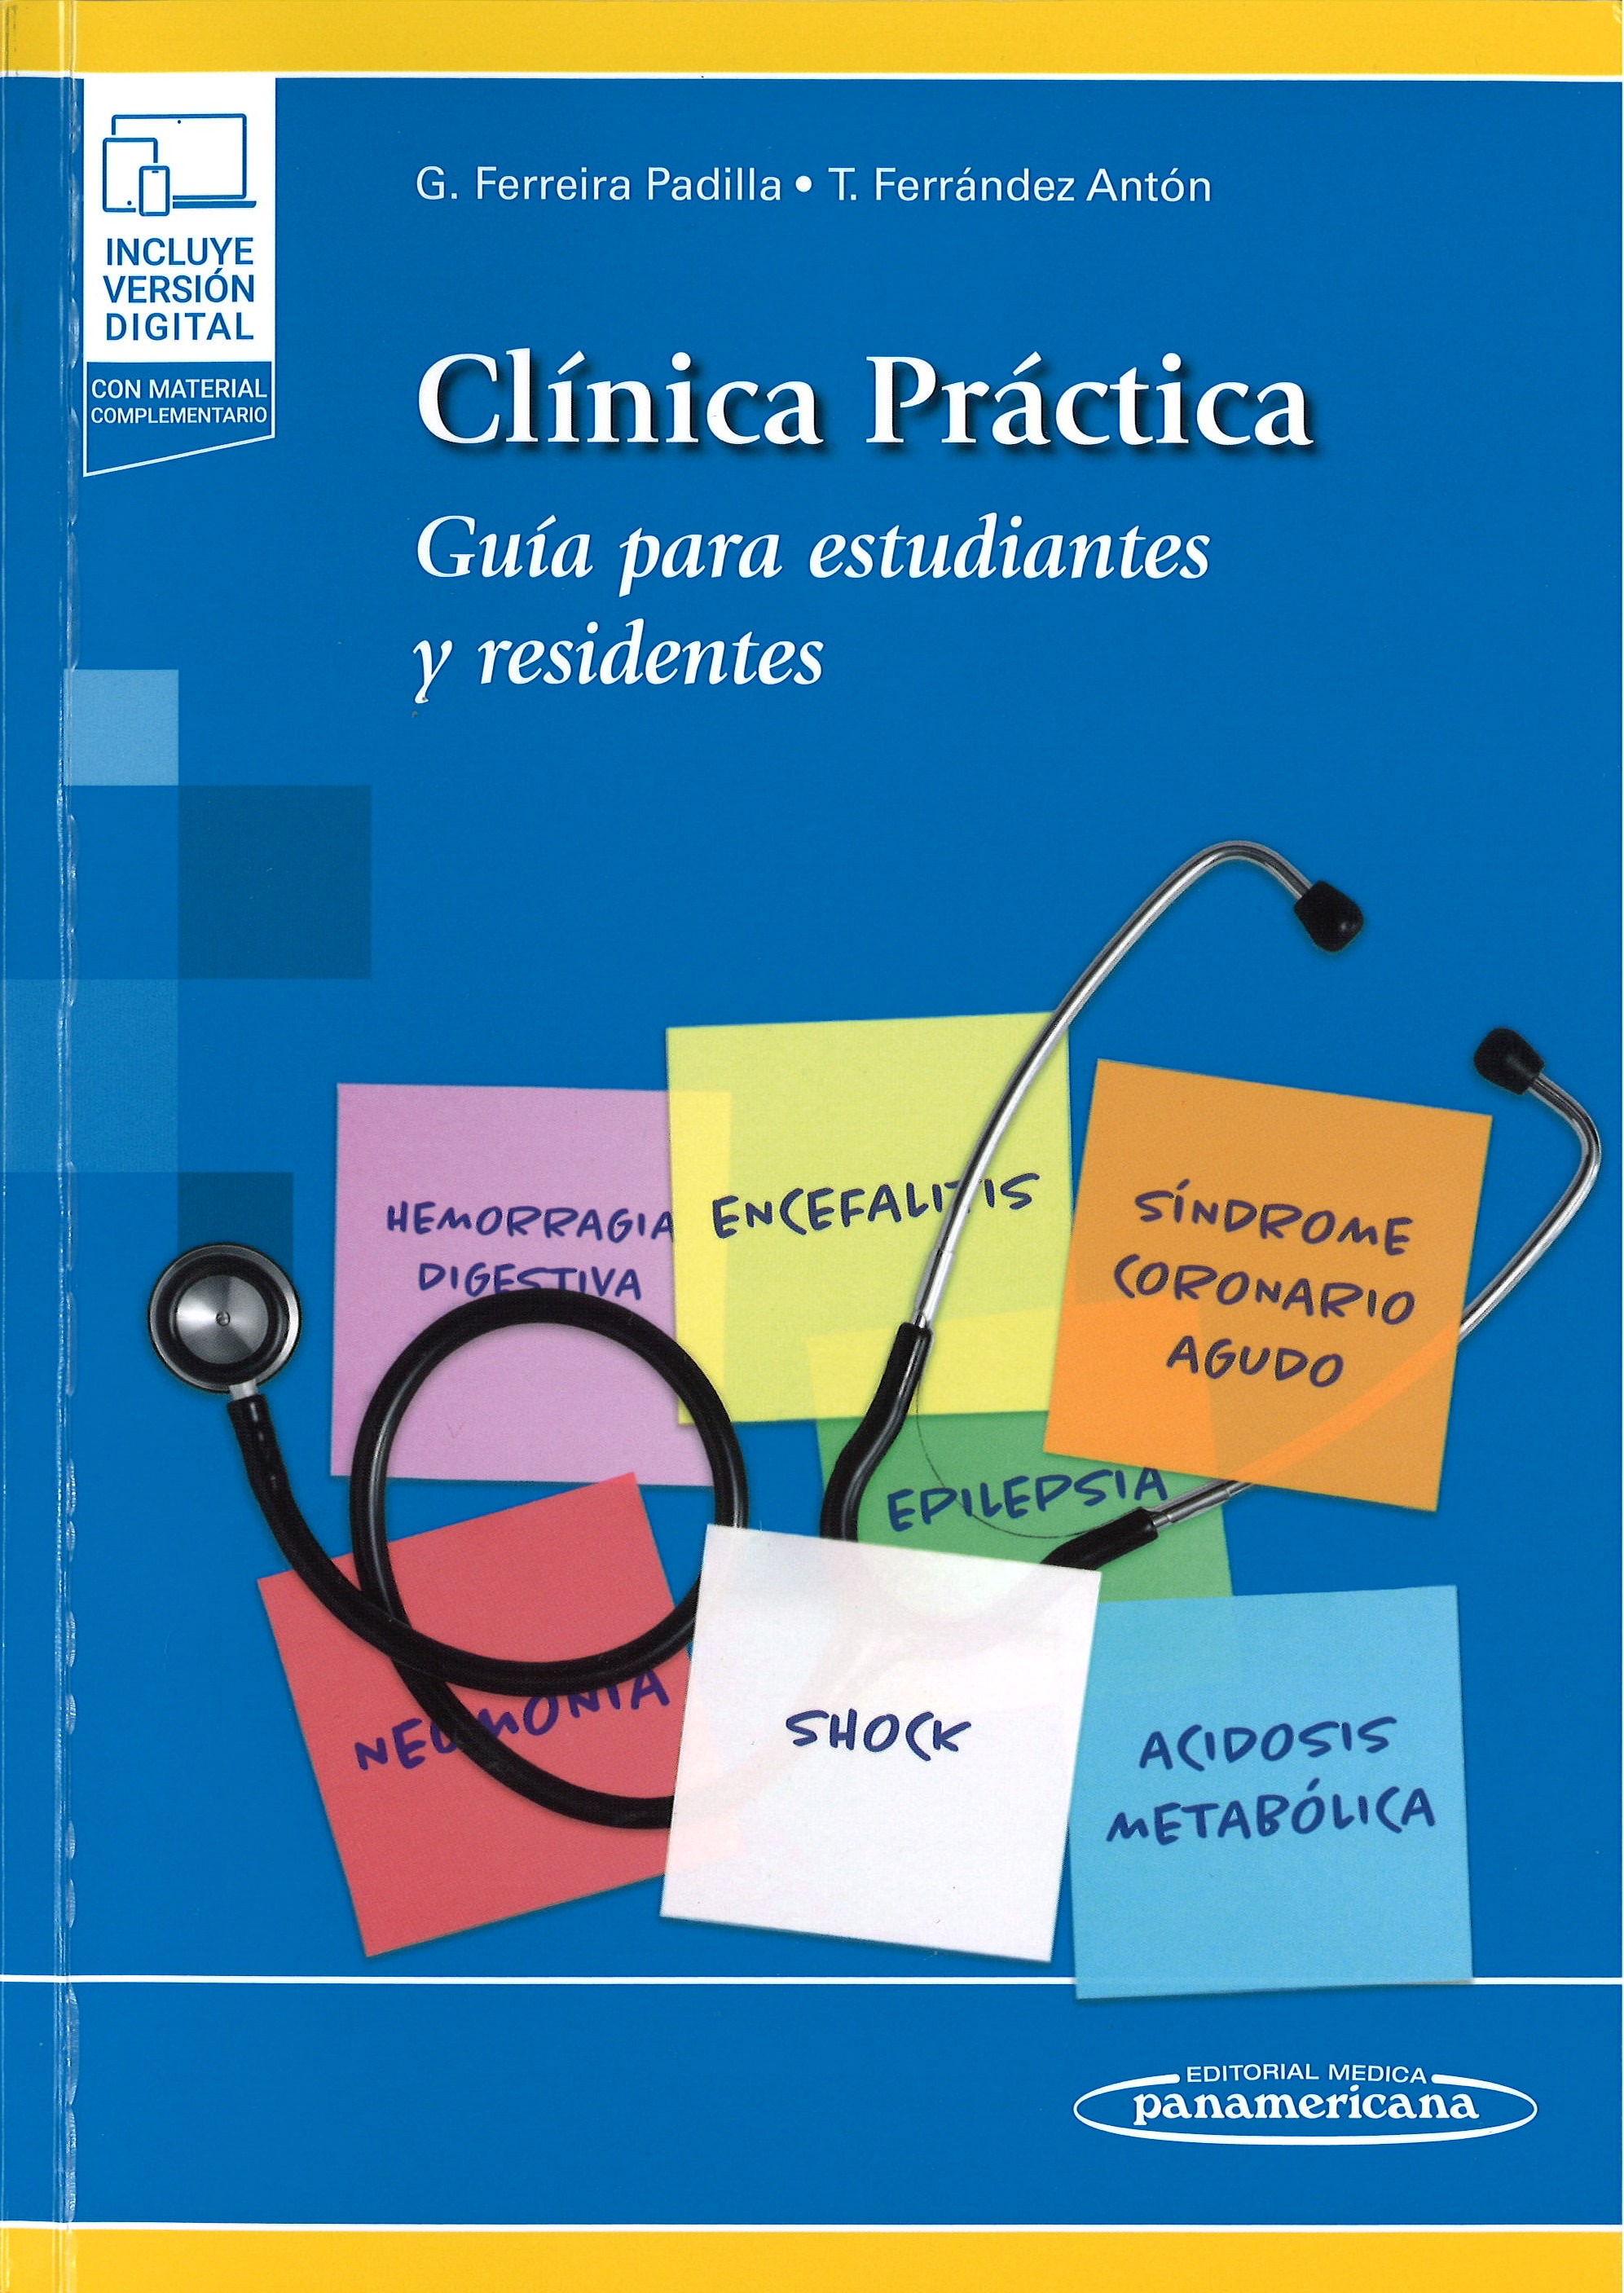 Imagen de portada del libro Clínica práctica